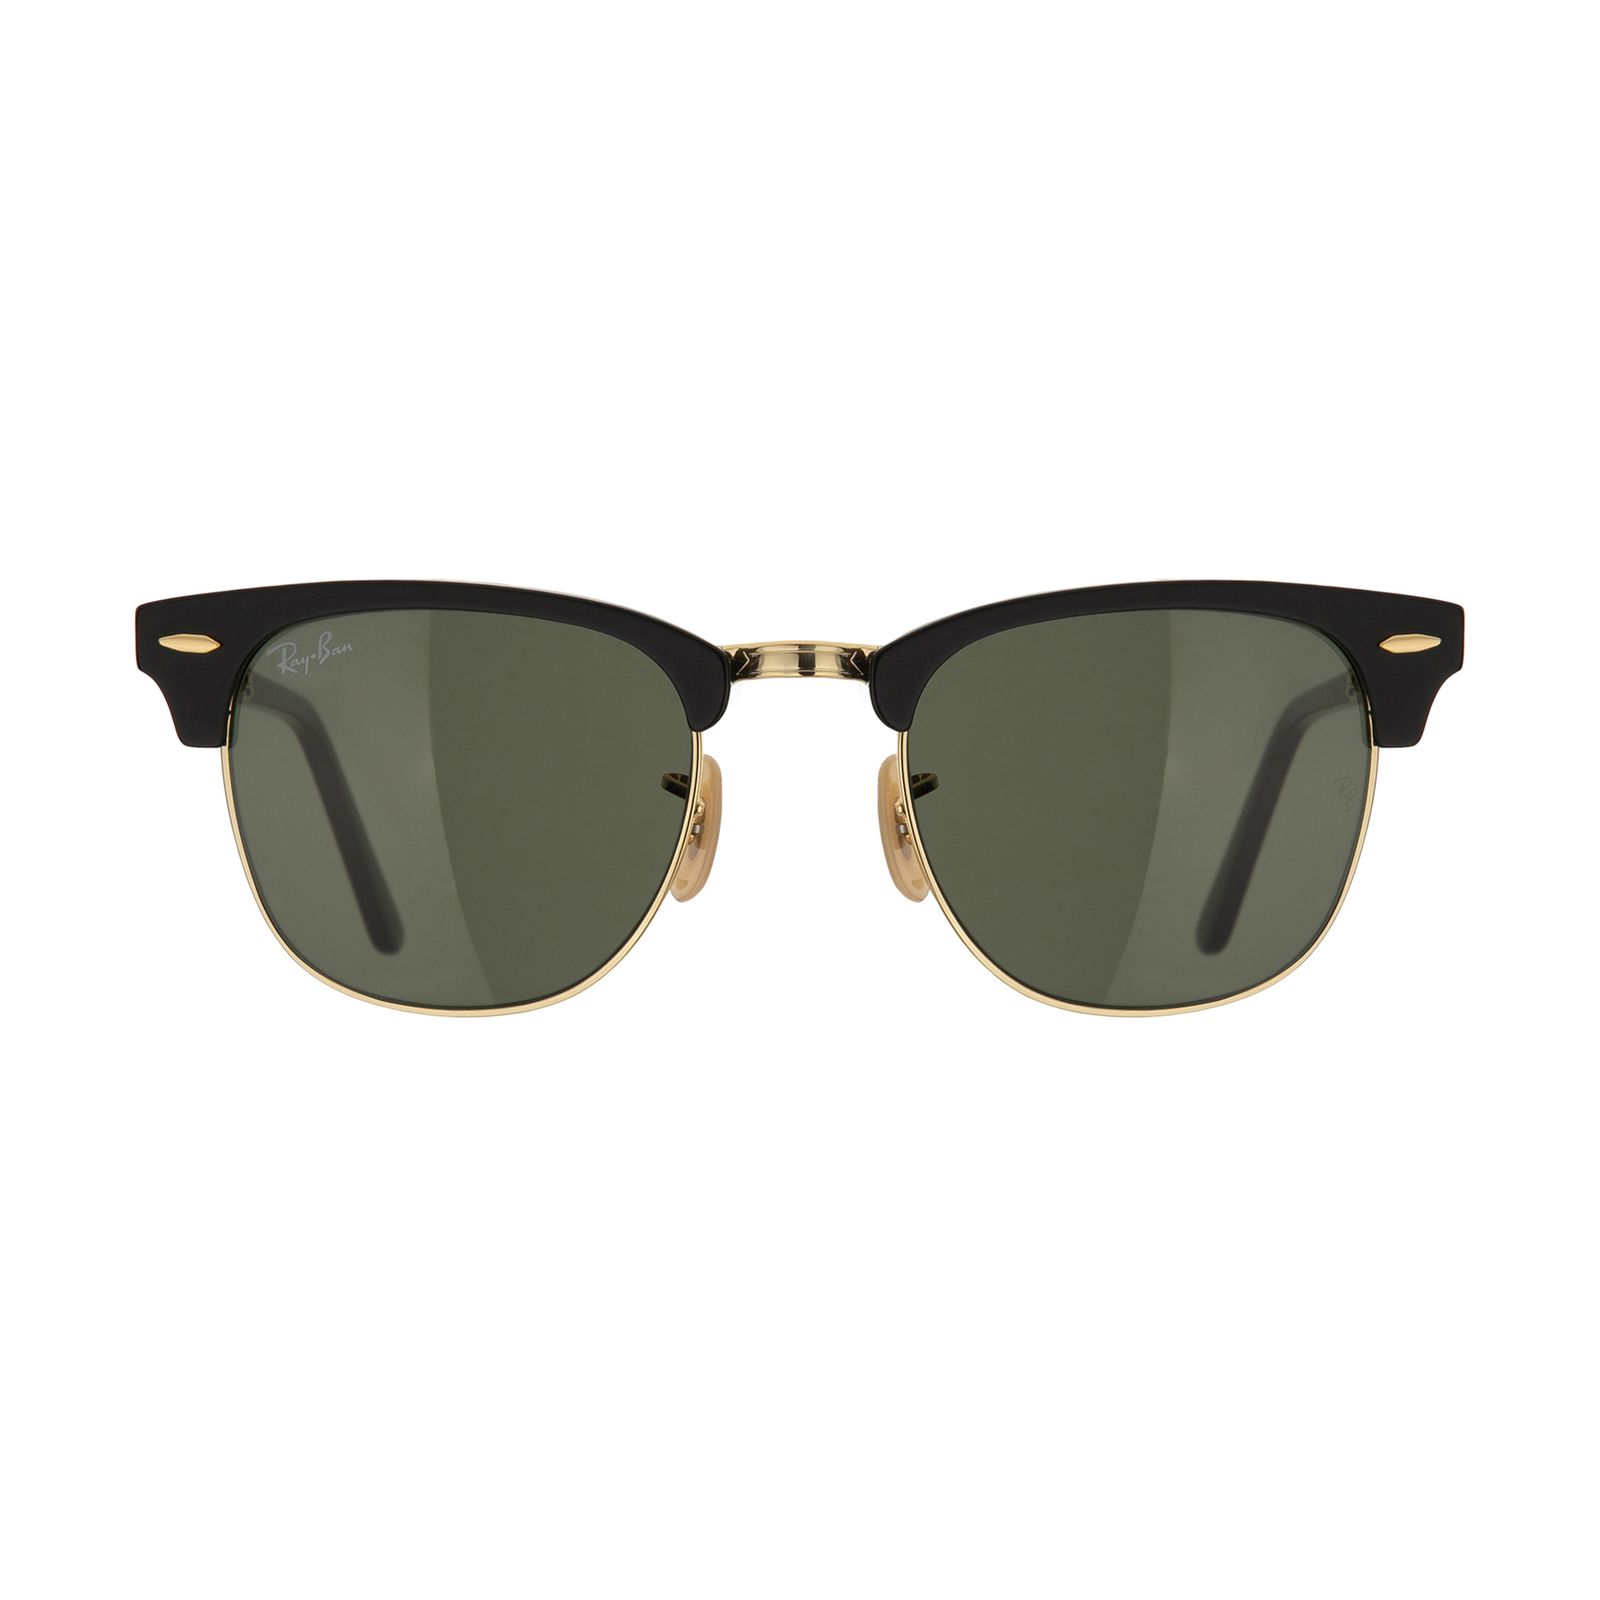 عینک آفتابی ری بن مدل 3016 W0365 51 -  - 1